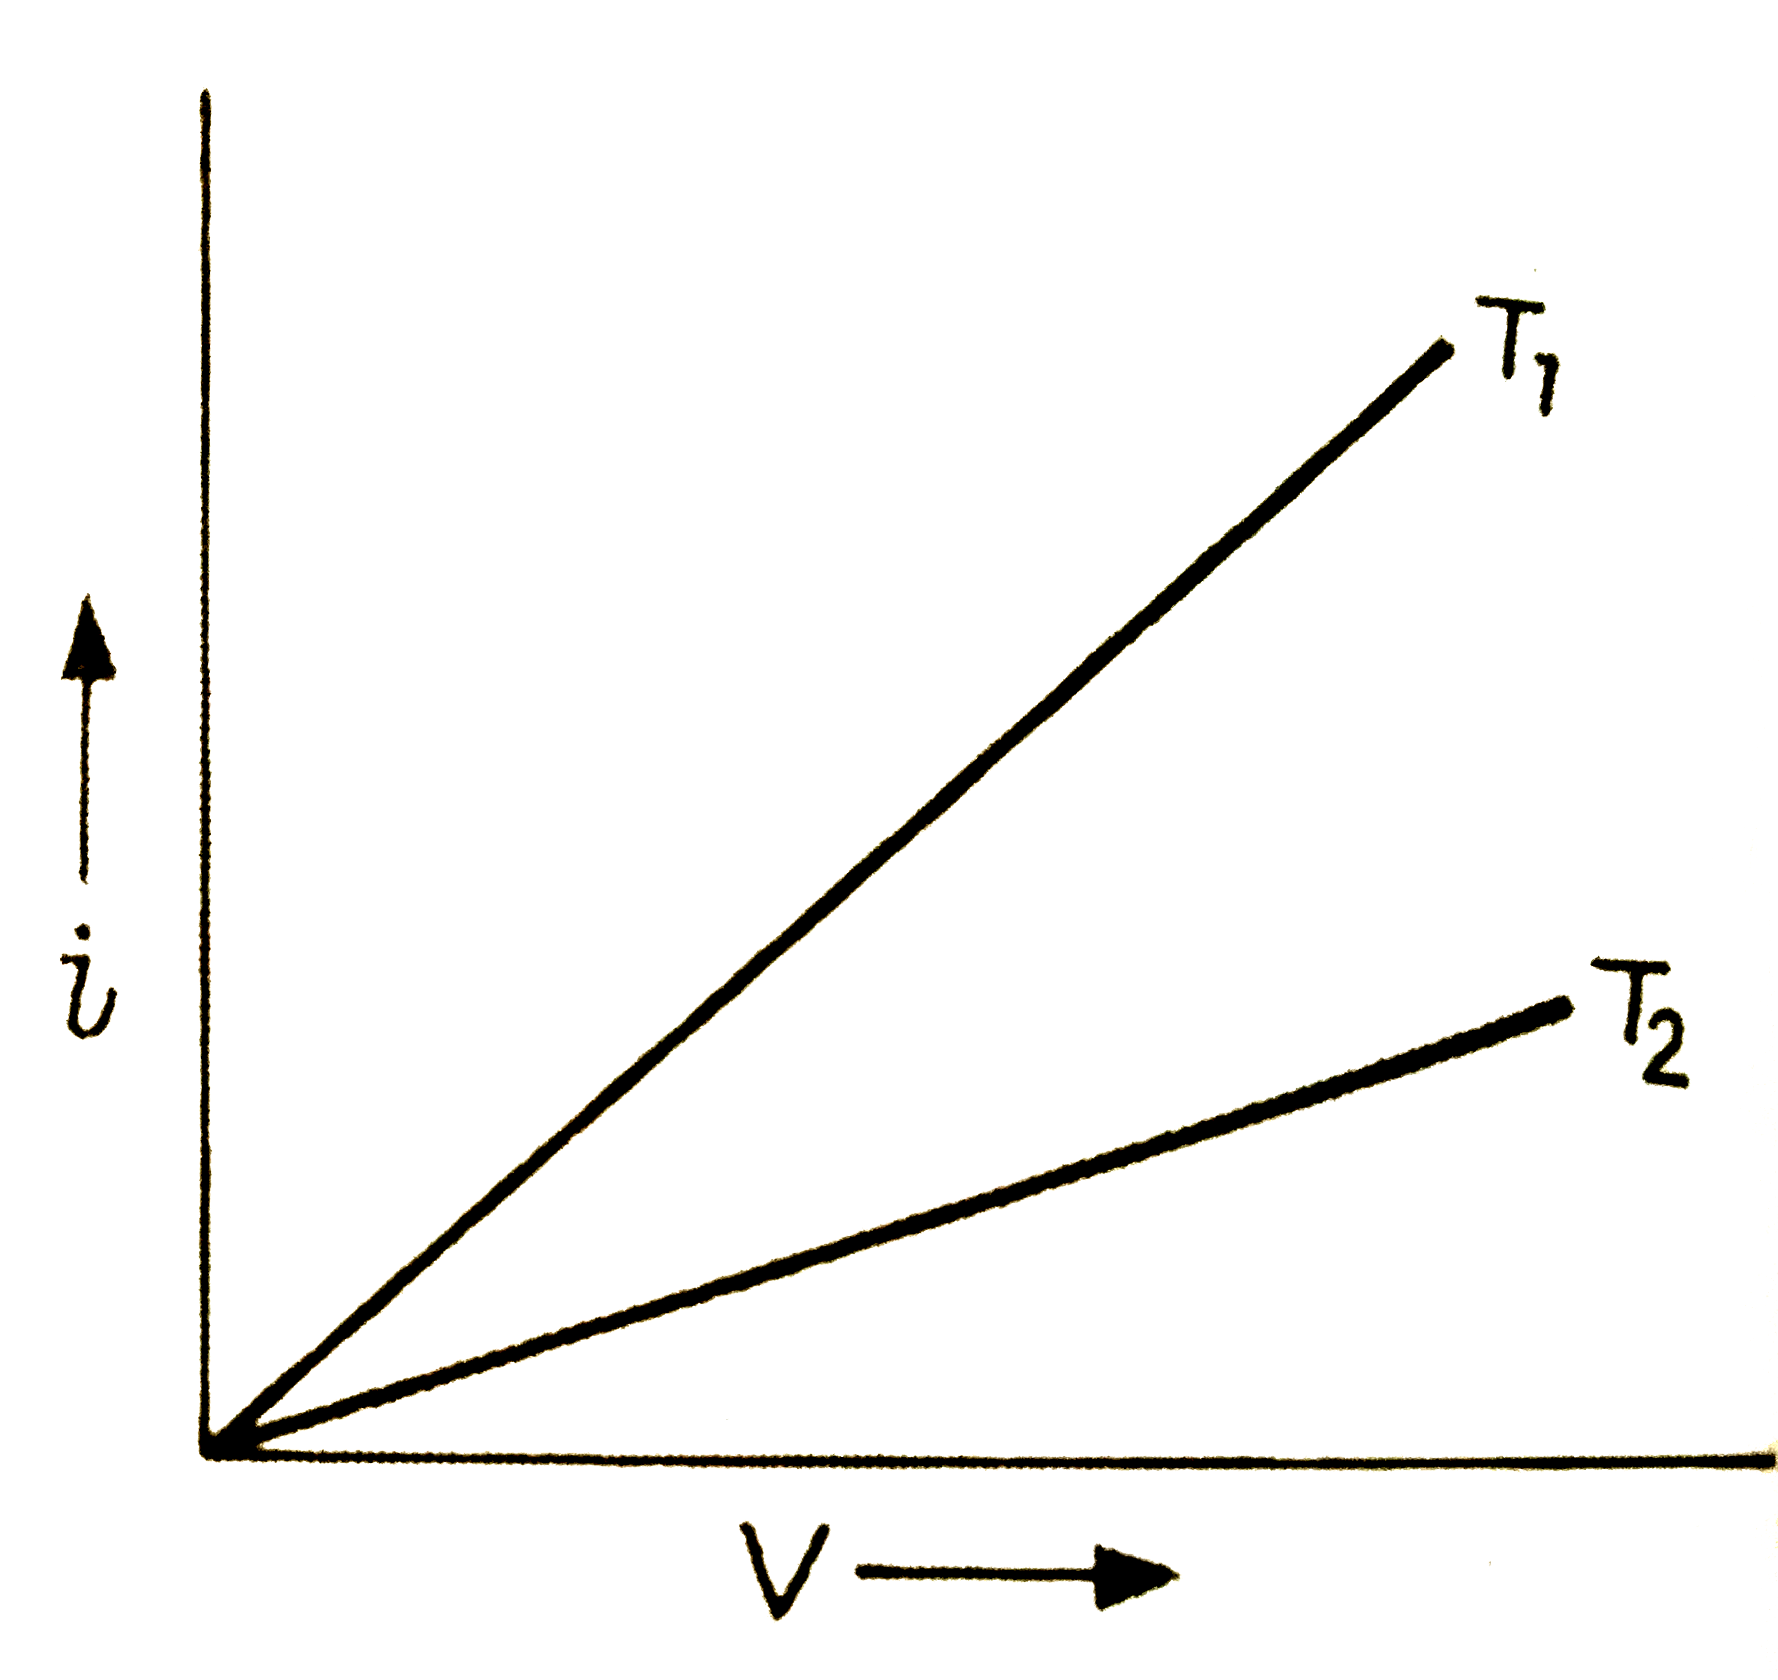 एक  दिये  हुए  धातु  के तार  के लिये  दो  विभिन्न  तापों  T(1)  व  T(2) पर  धारा  वोल्टेज  ग्राफ  संलग्न चित्र  की  भाँति हैं ।  इनमें  कौन  - सा  ताप  अधिक  है ?